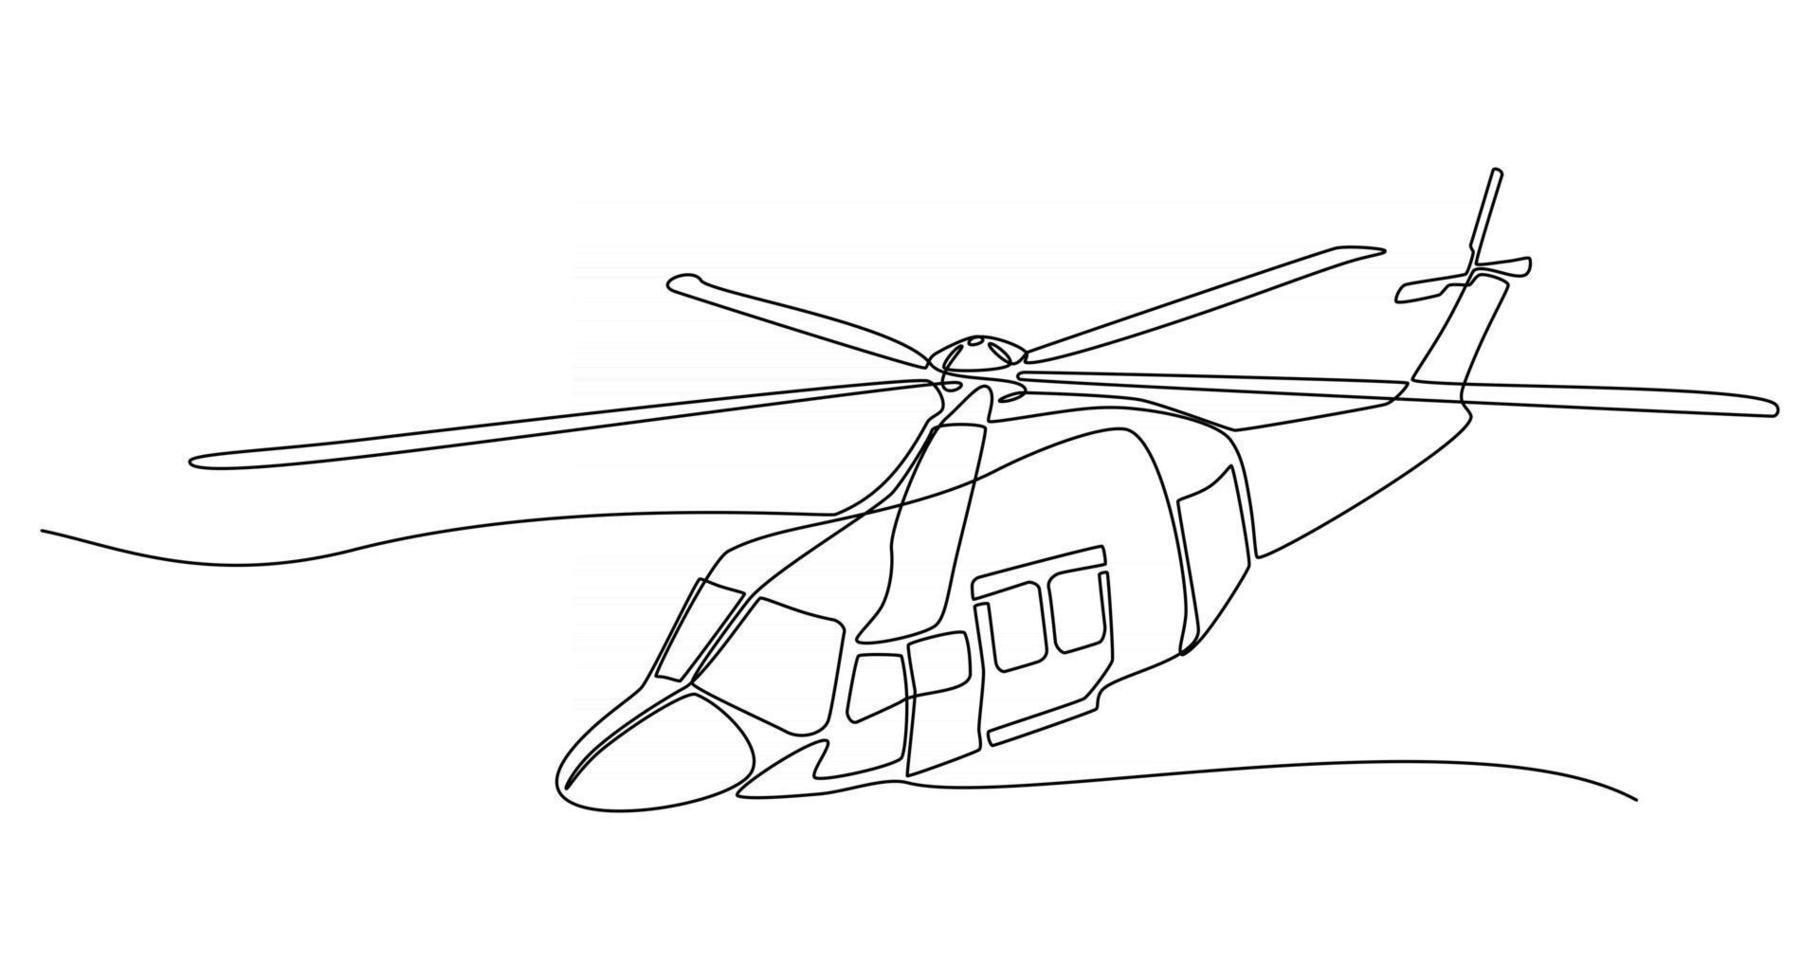 Kontinuierliche Strichzeichnung Hubschrauber-Vektor-Illustration vektor